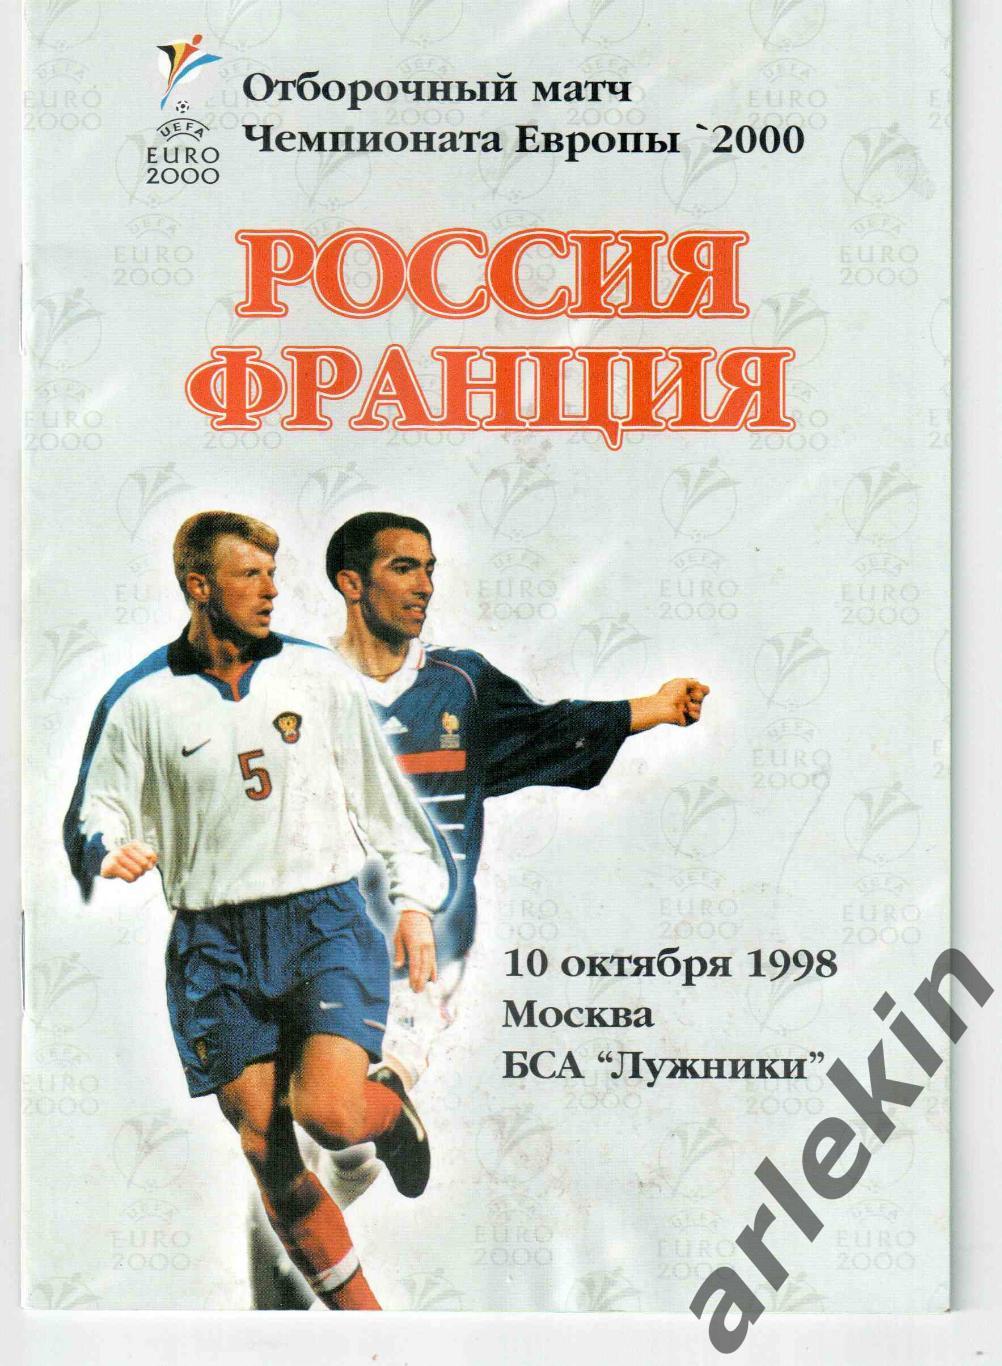 Сборная России - Сборная Франции 10.10.1998 г. Отборочный матч ЧЕ 2000